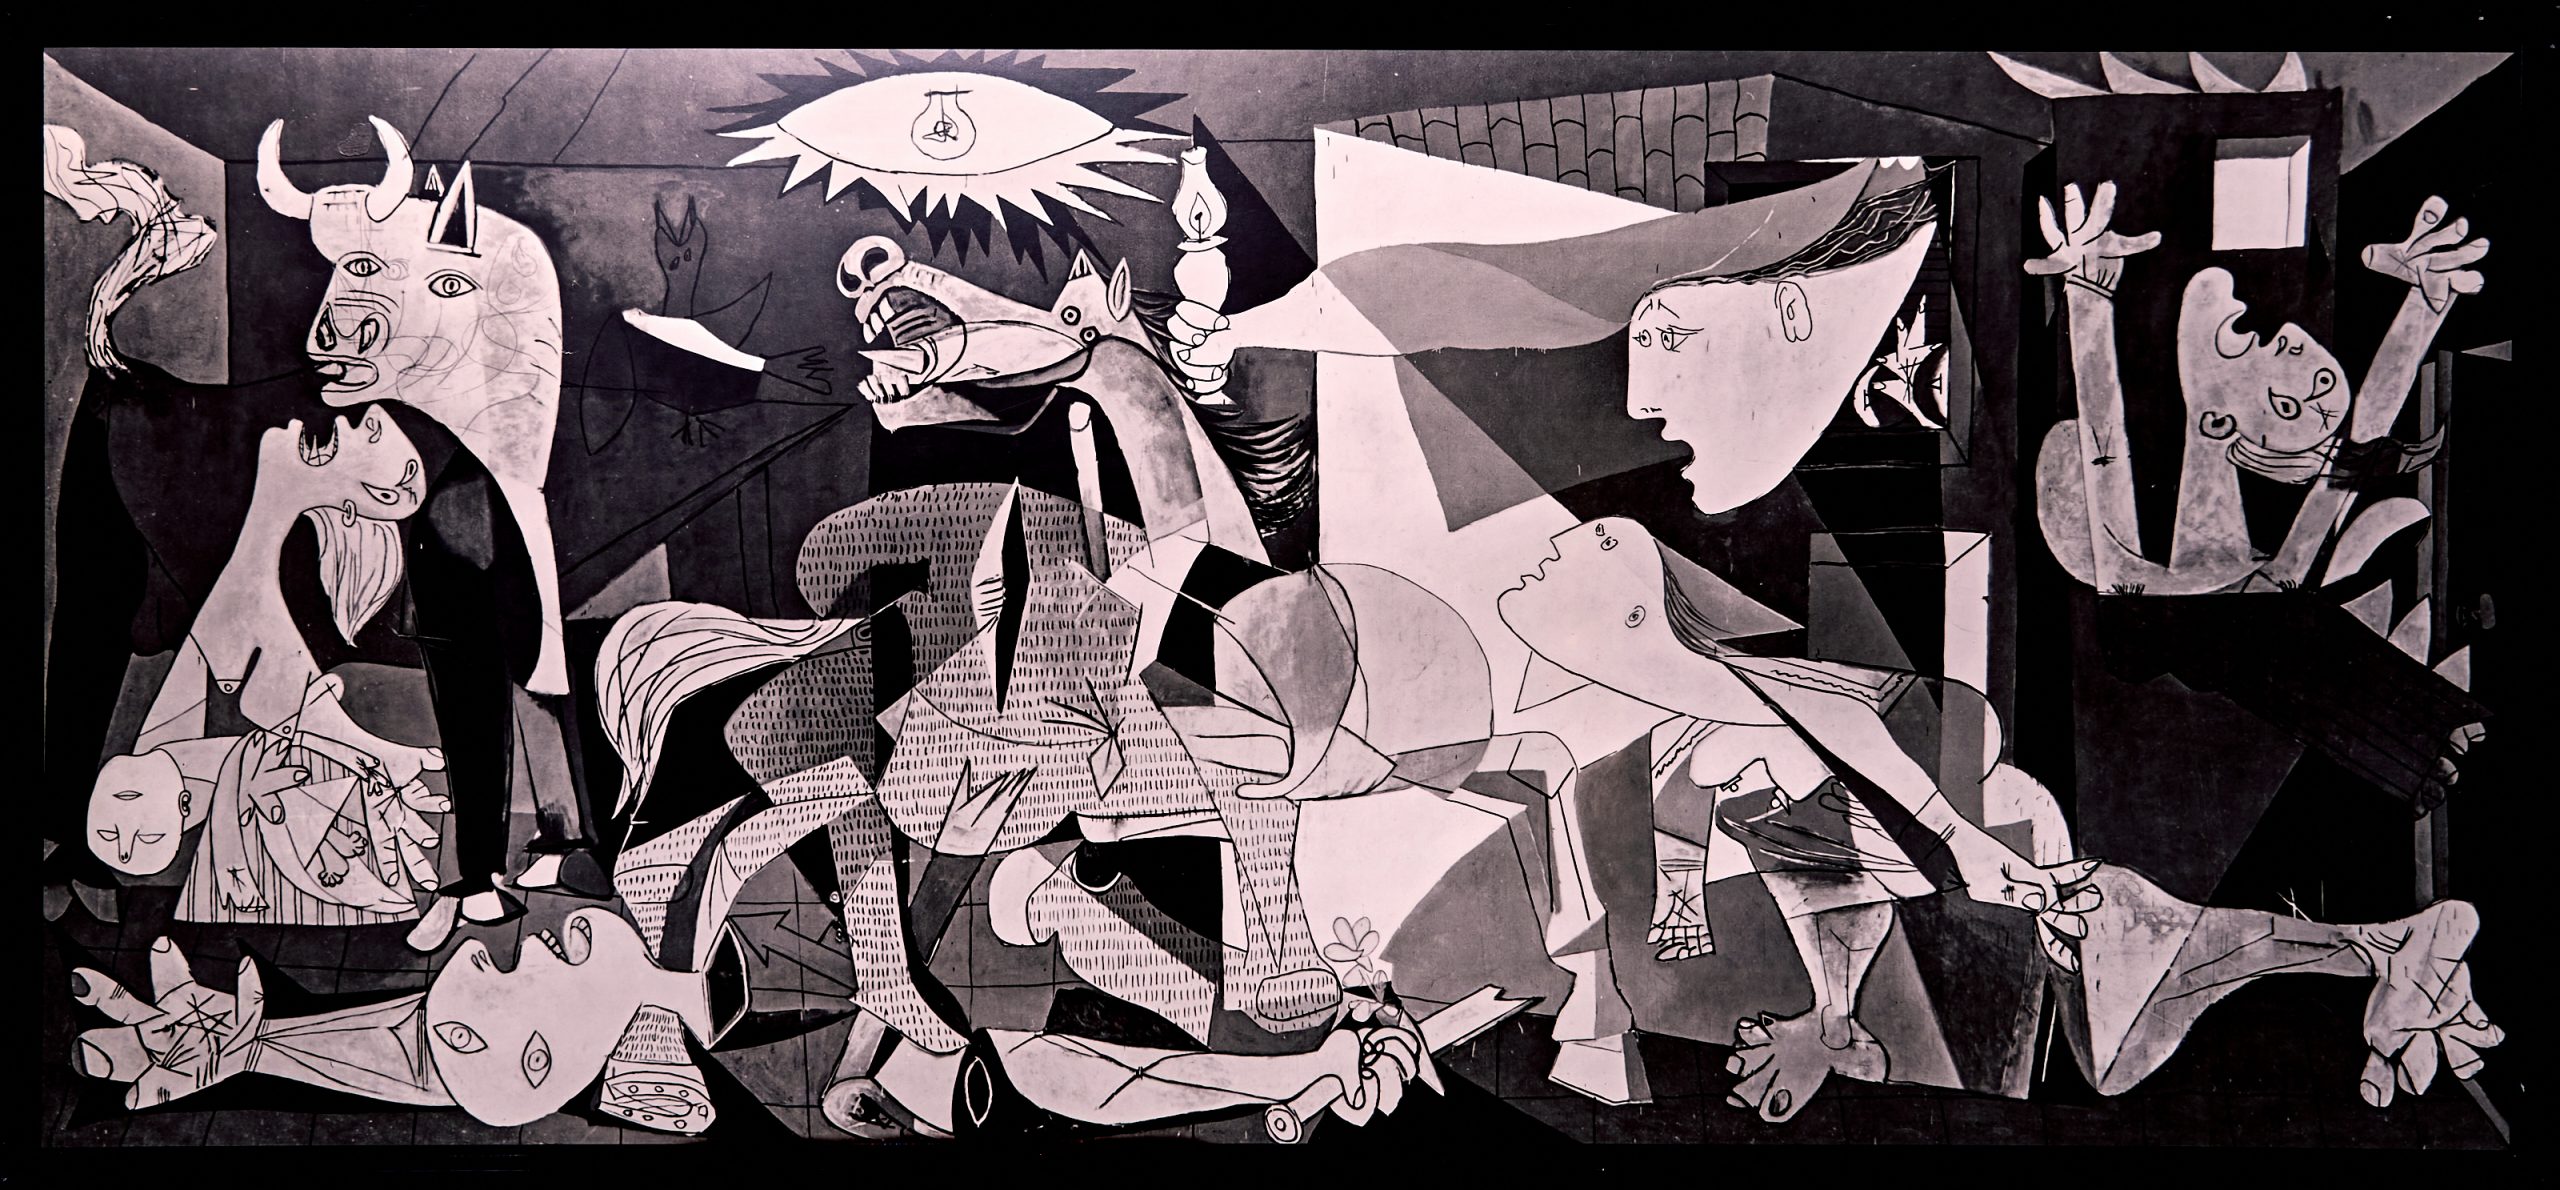 Picasso, Guernica